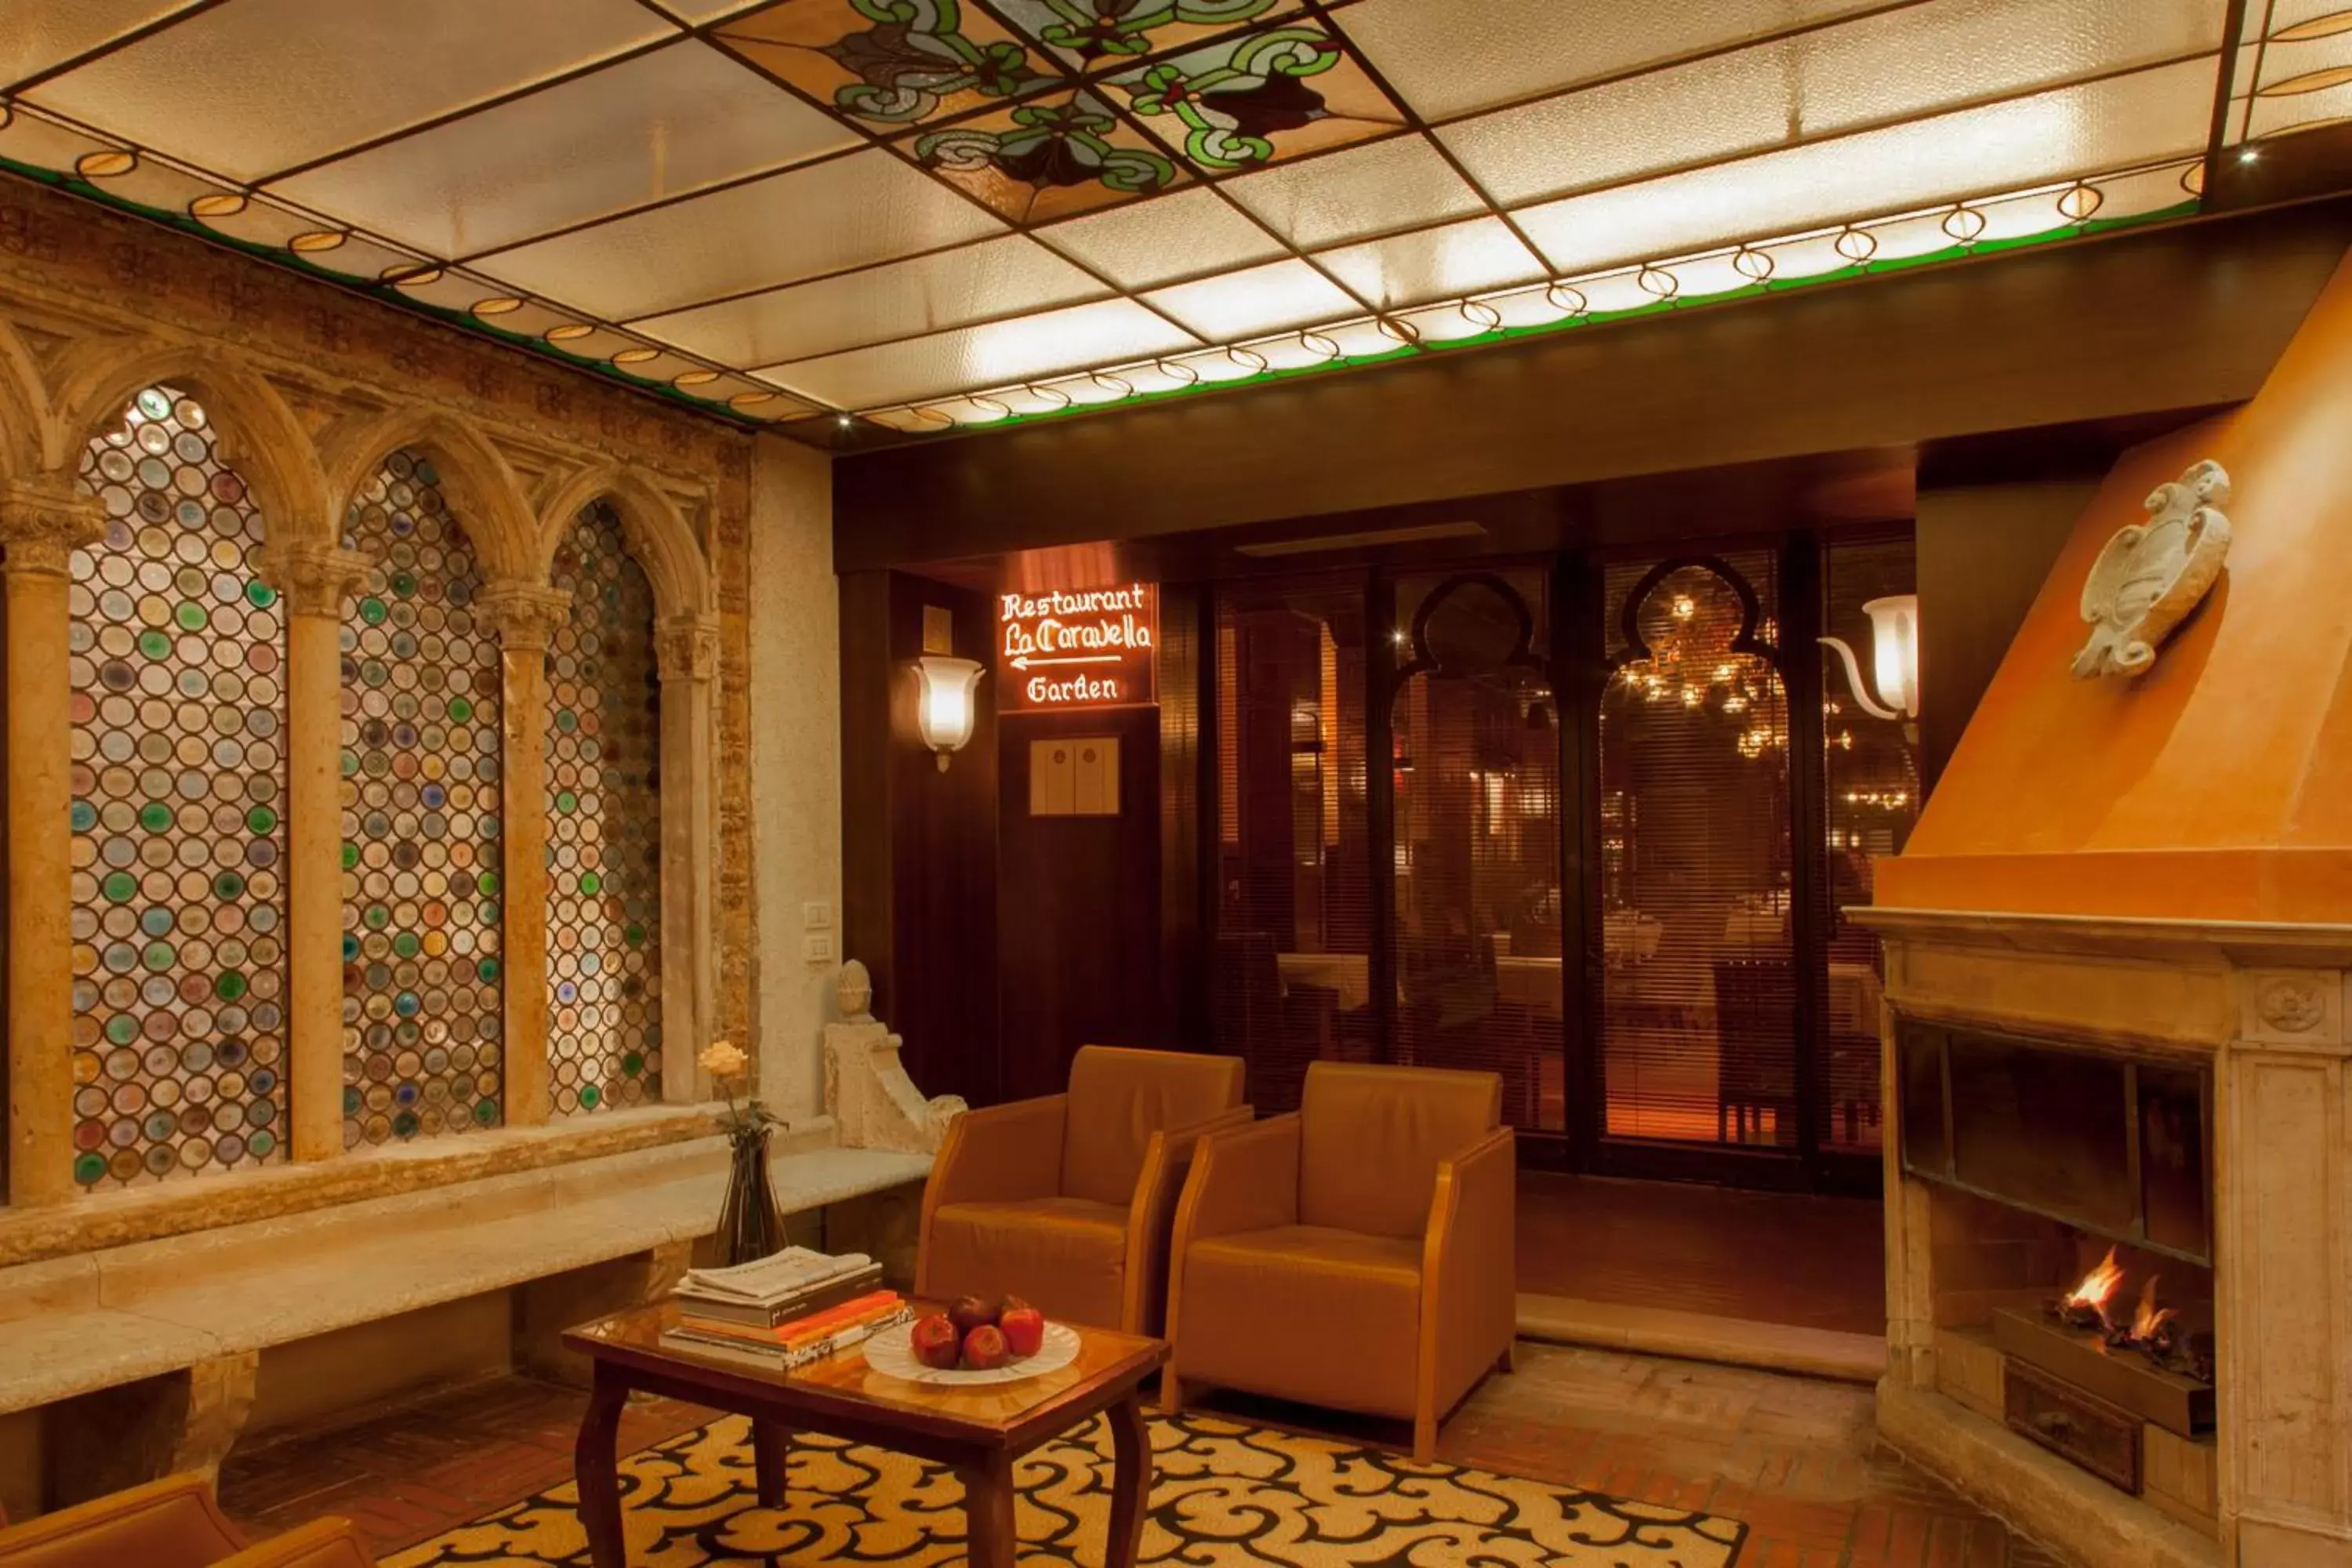 Lobby or reception, Lobby/Reception in Hotel Saturnia & International